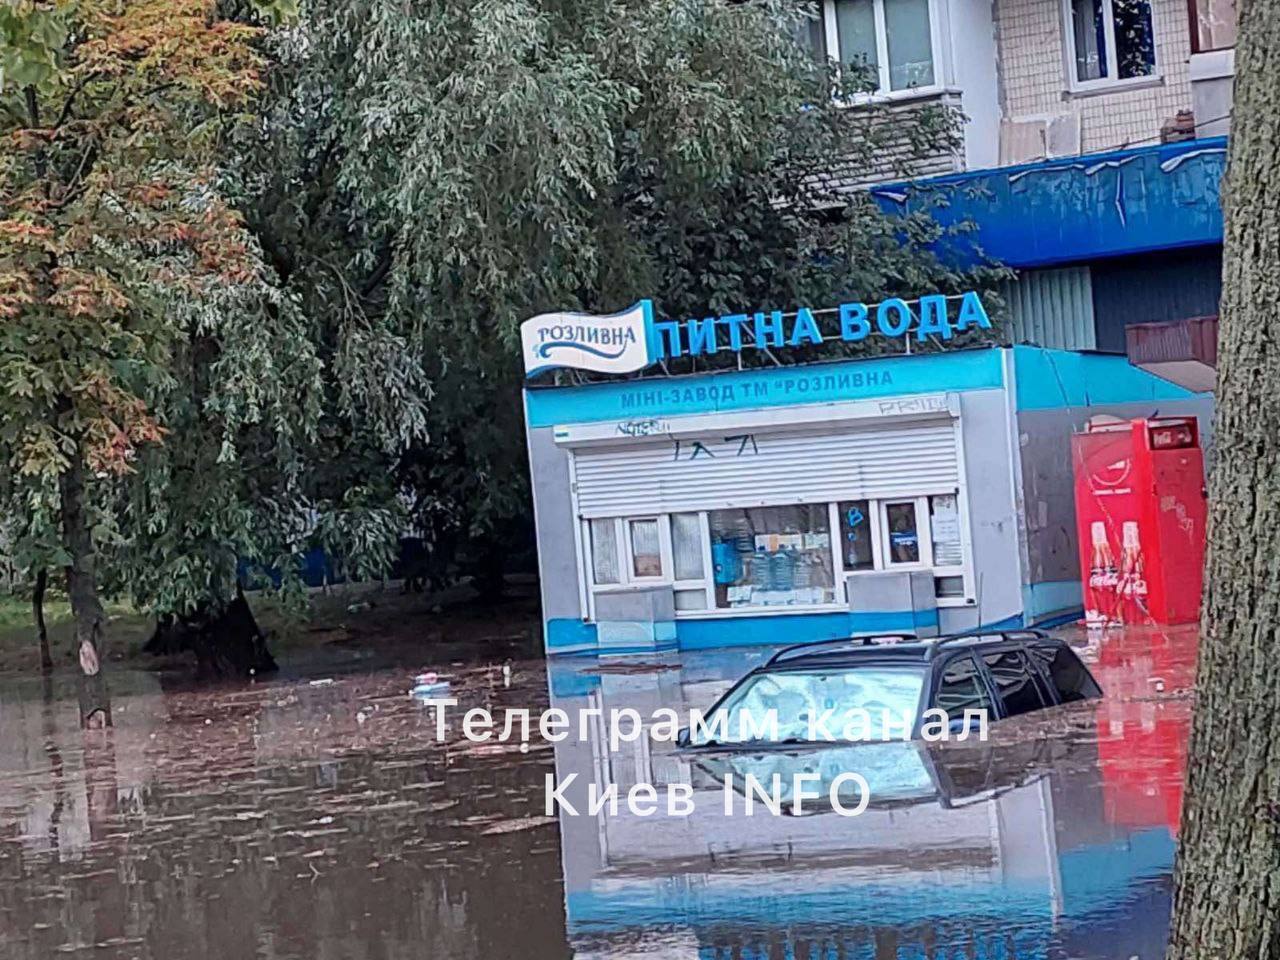 Из-за сильного дождя улицы Киева затоплены